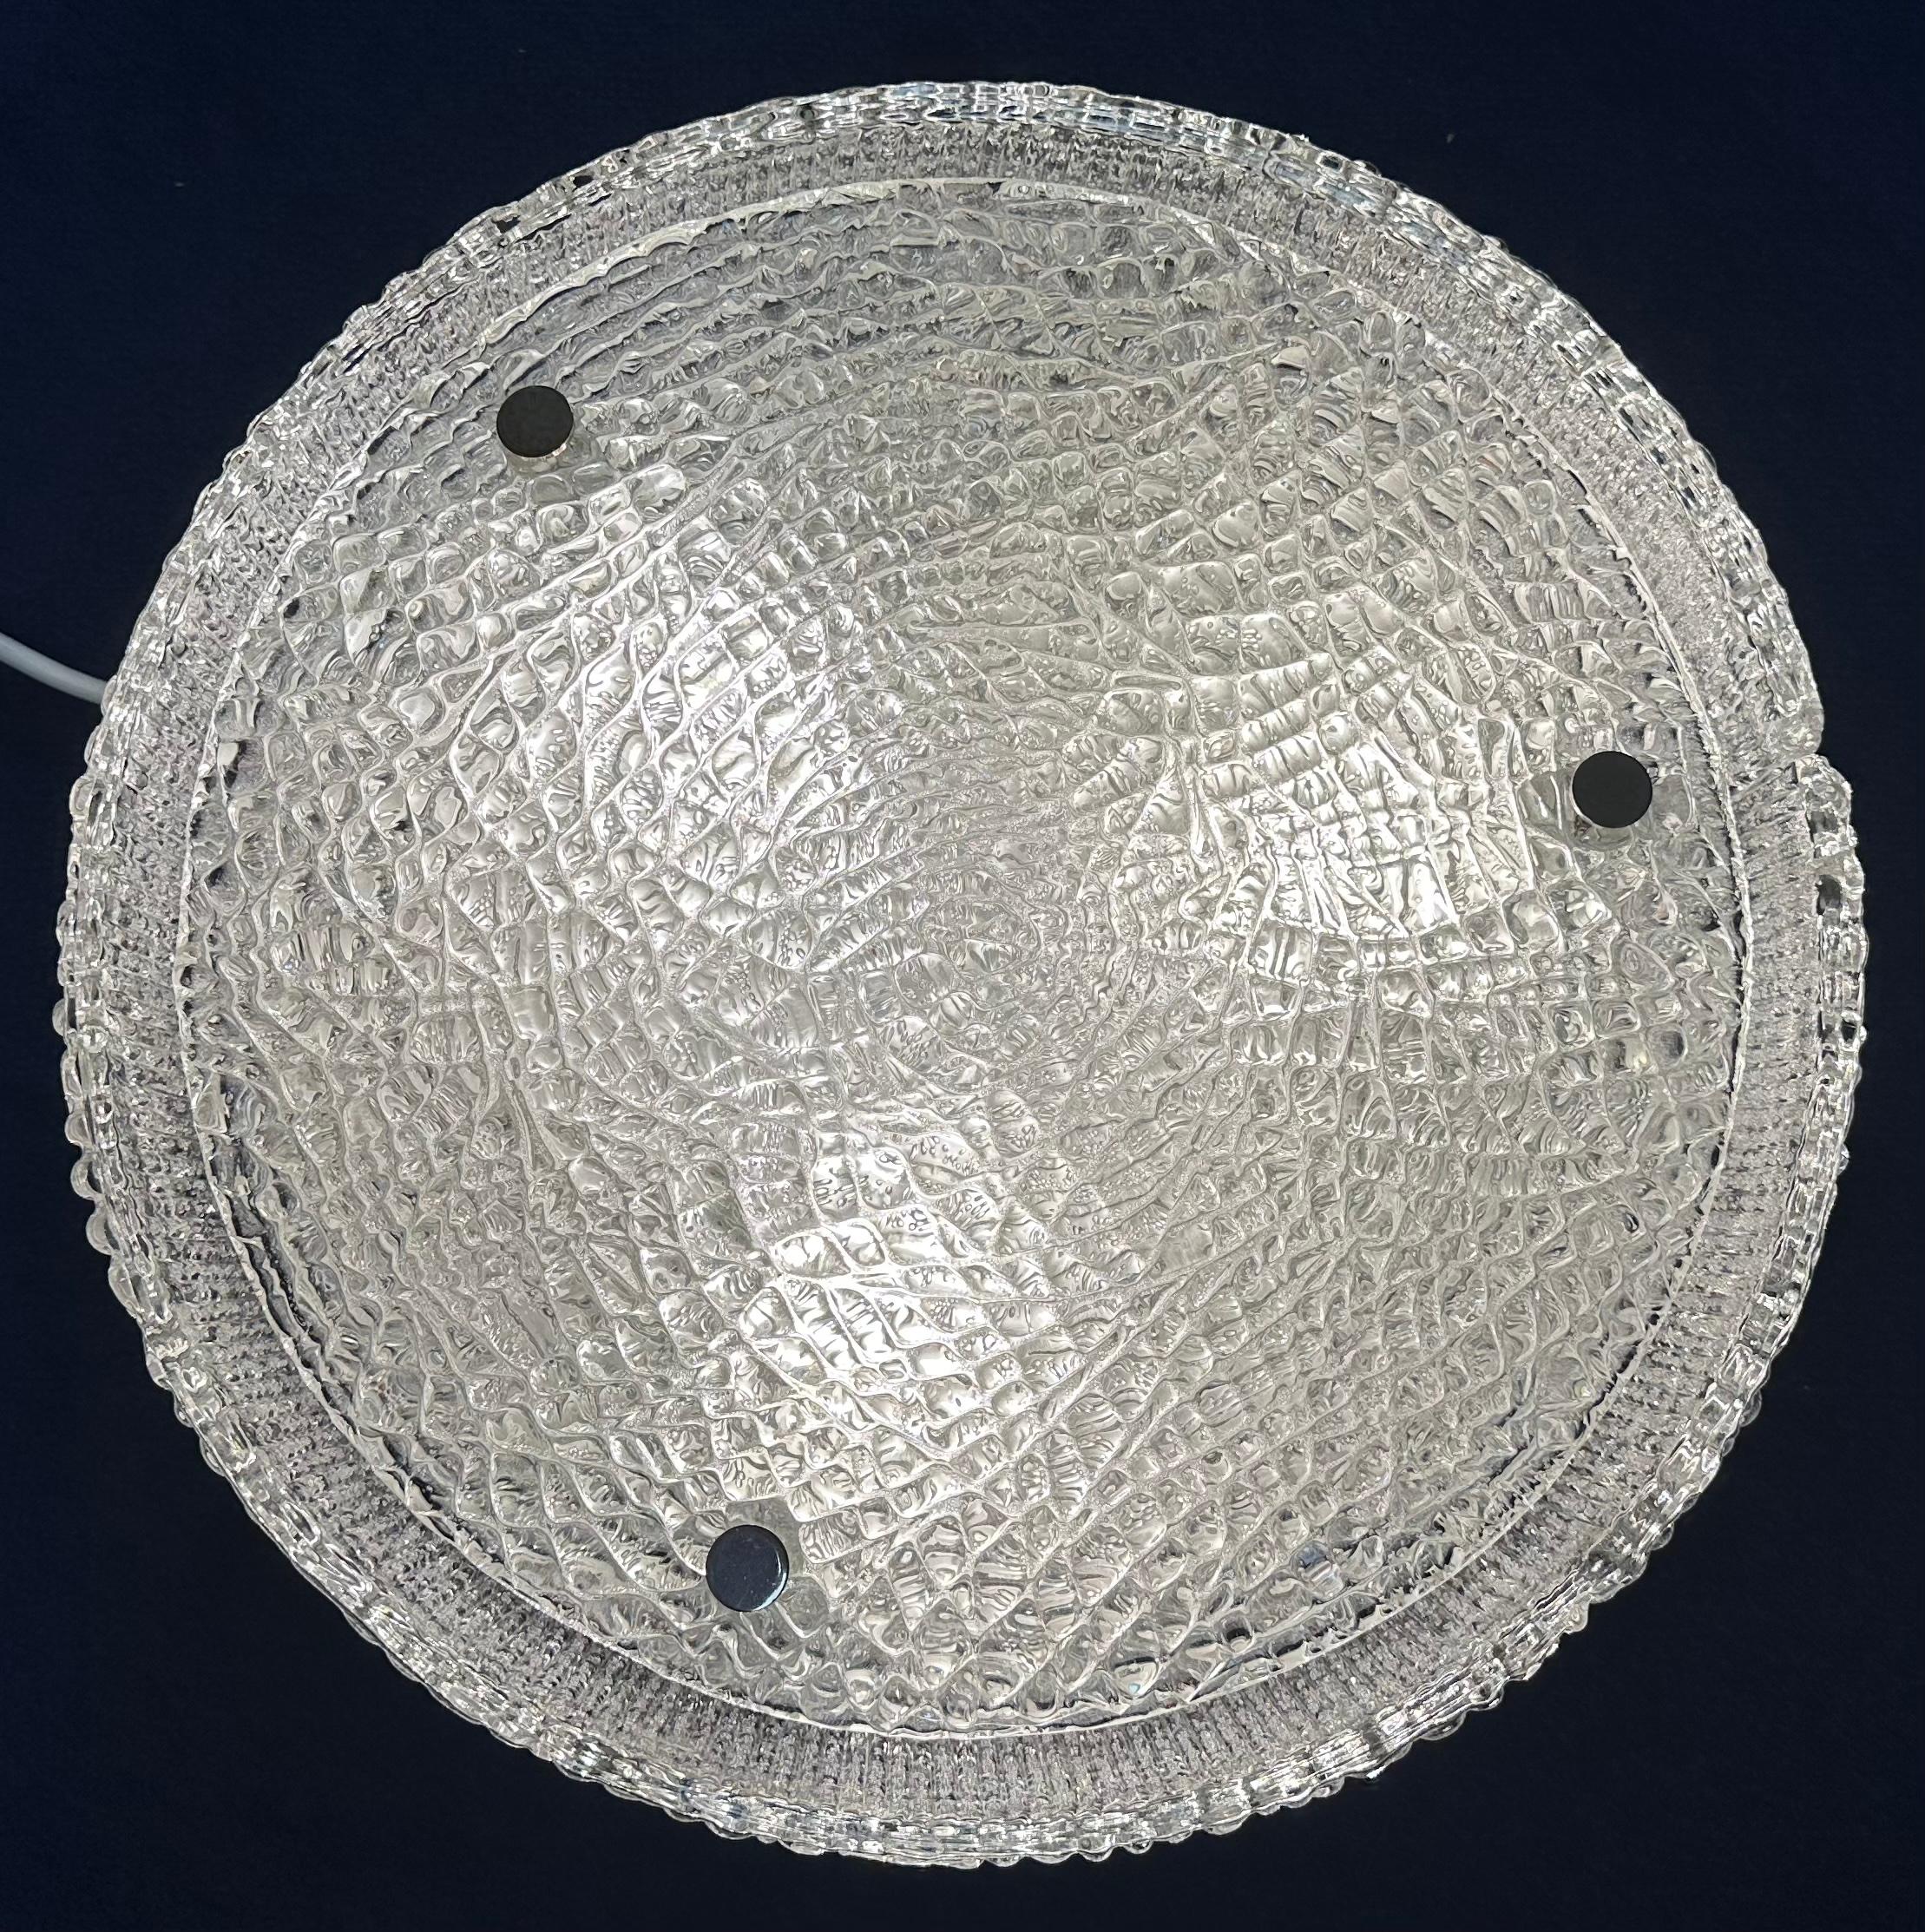 1960s German Kaiser Leuchten Textured Iced Glass Flush Mount Ceiling Light For Sale 3